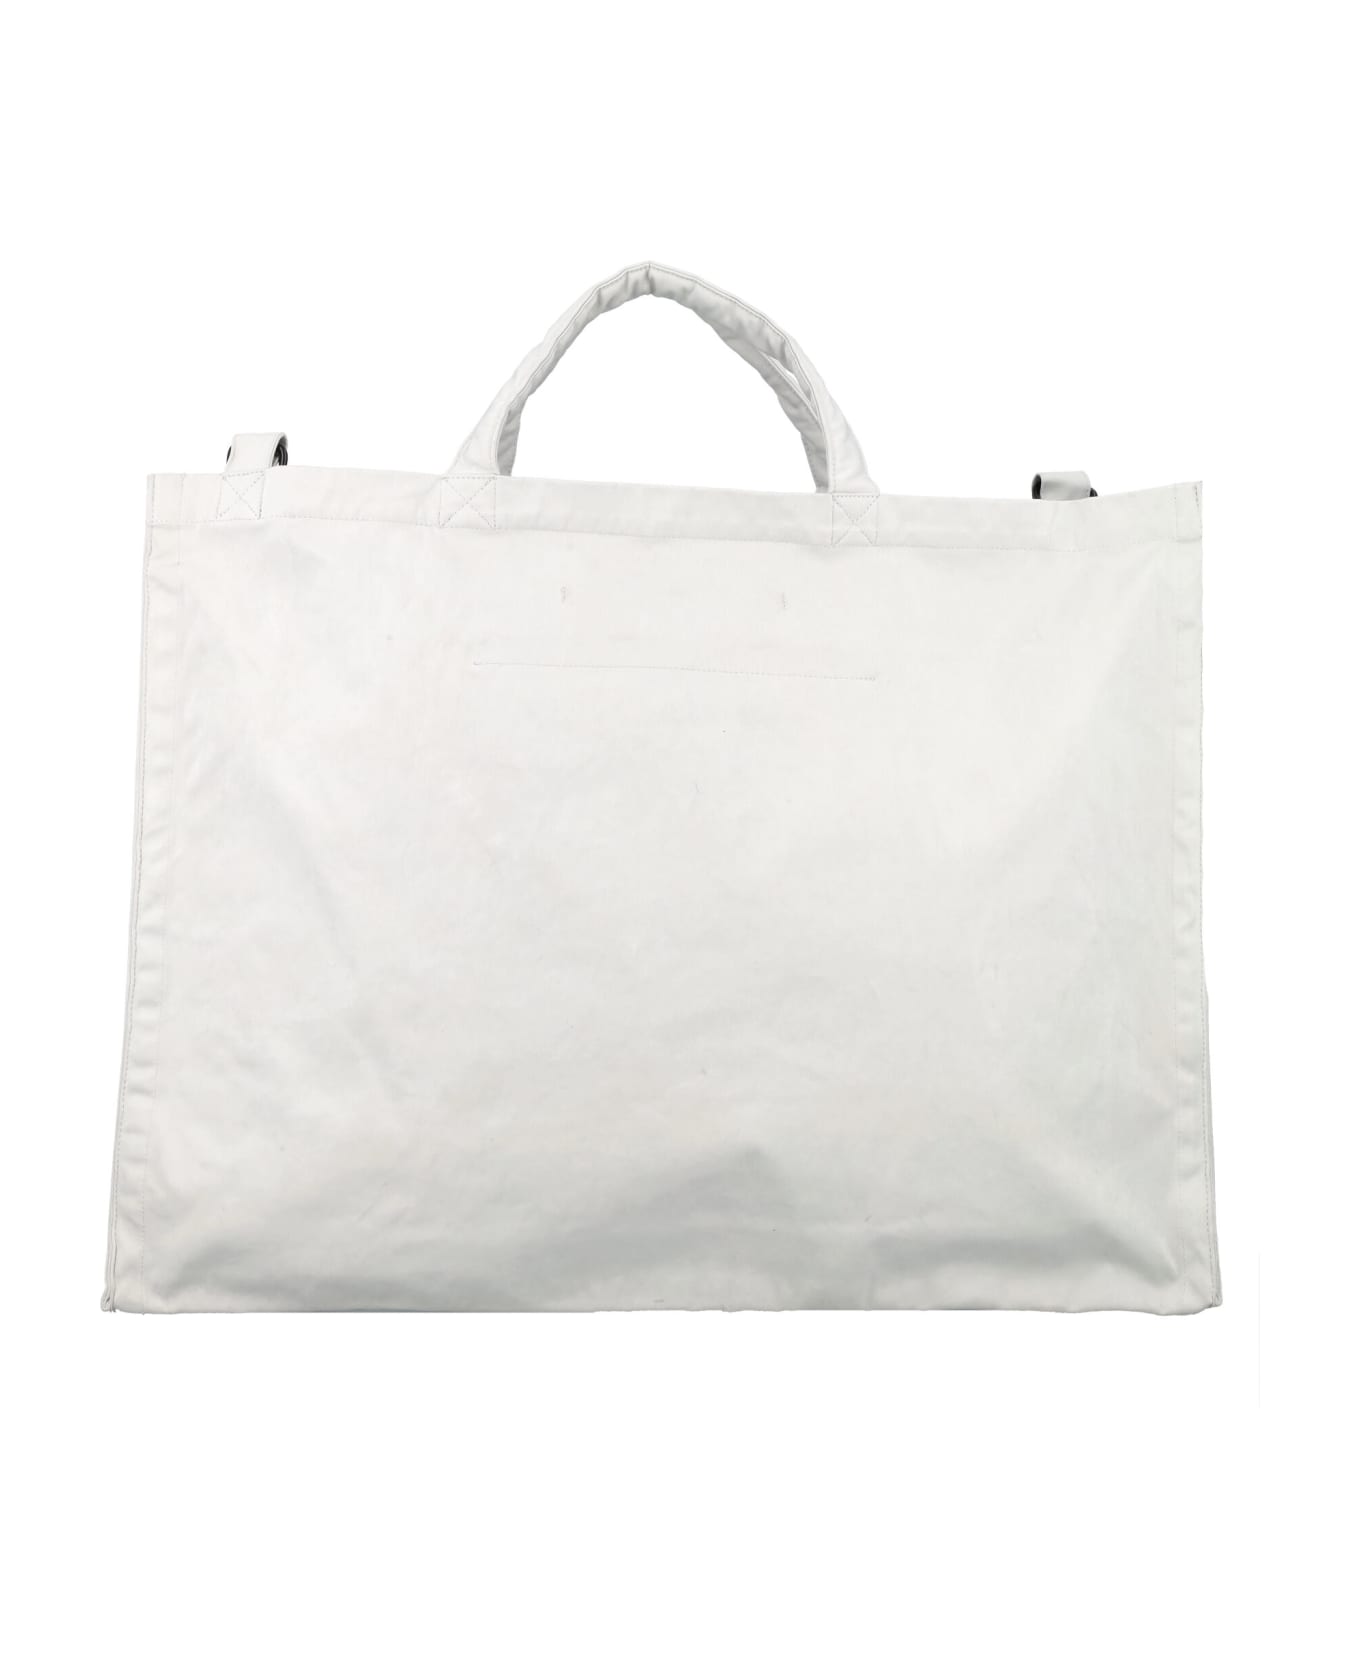 Ten C Shoulder Bag - SILVER GREY